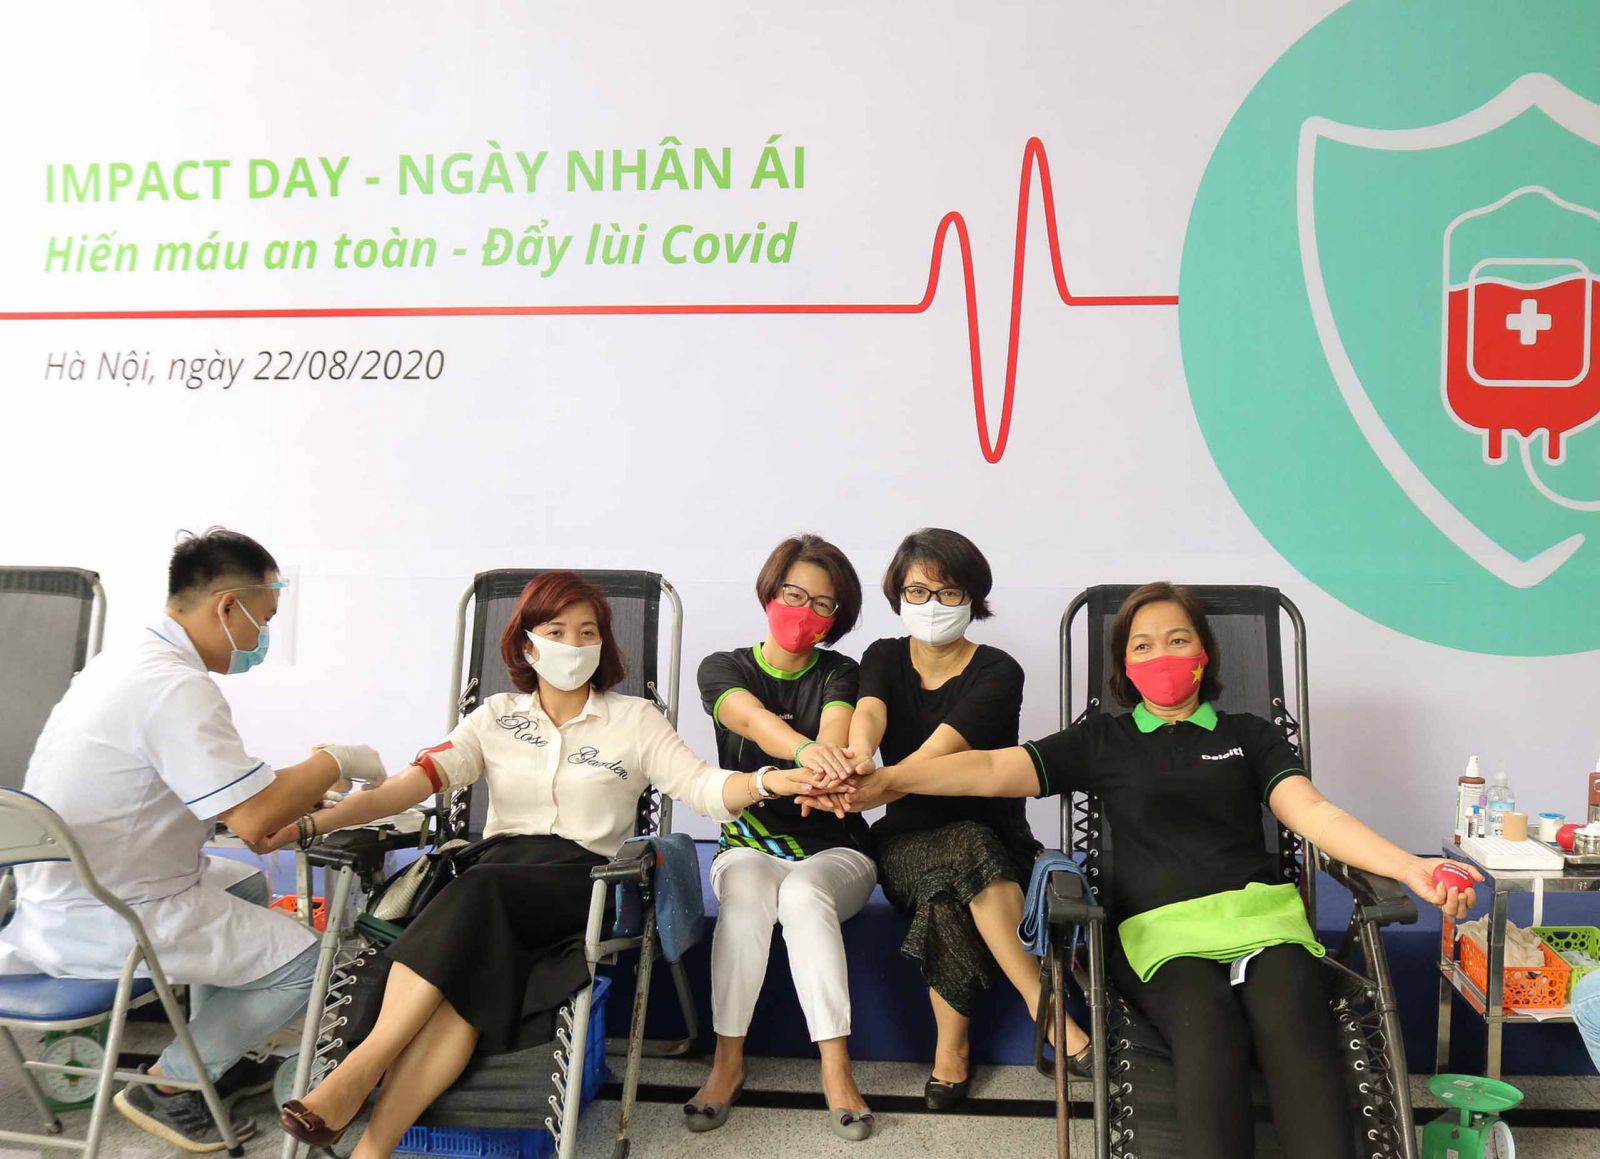 Deloitte Việt Nam phối hợp với các đơn vị tổ chức “Ngày Nhân Ái” với chủ đề “Hiến máu An toàn - Đẩy lùi Covid”.